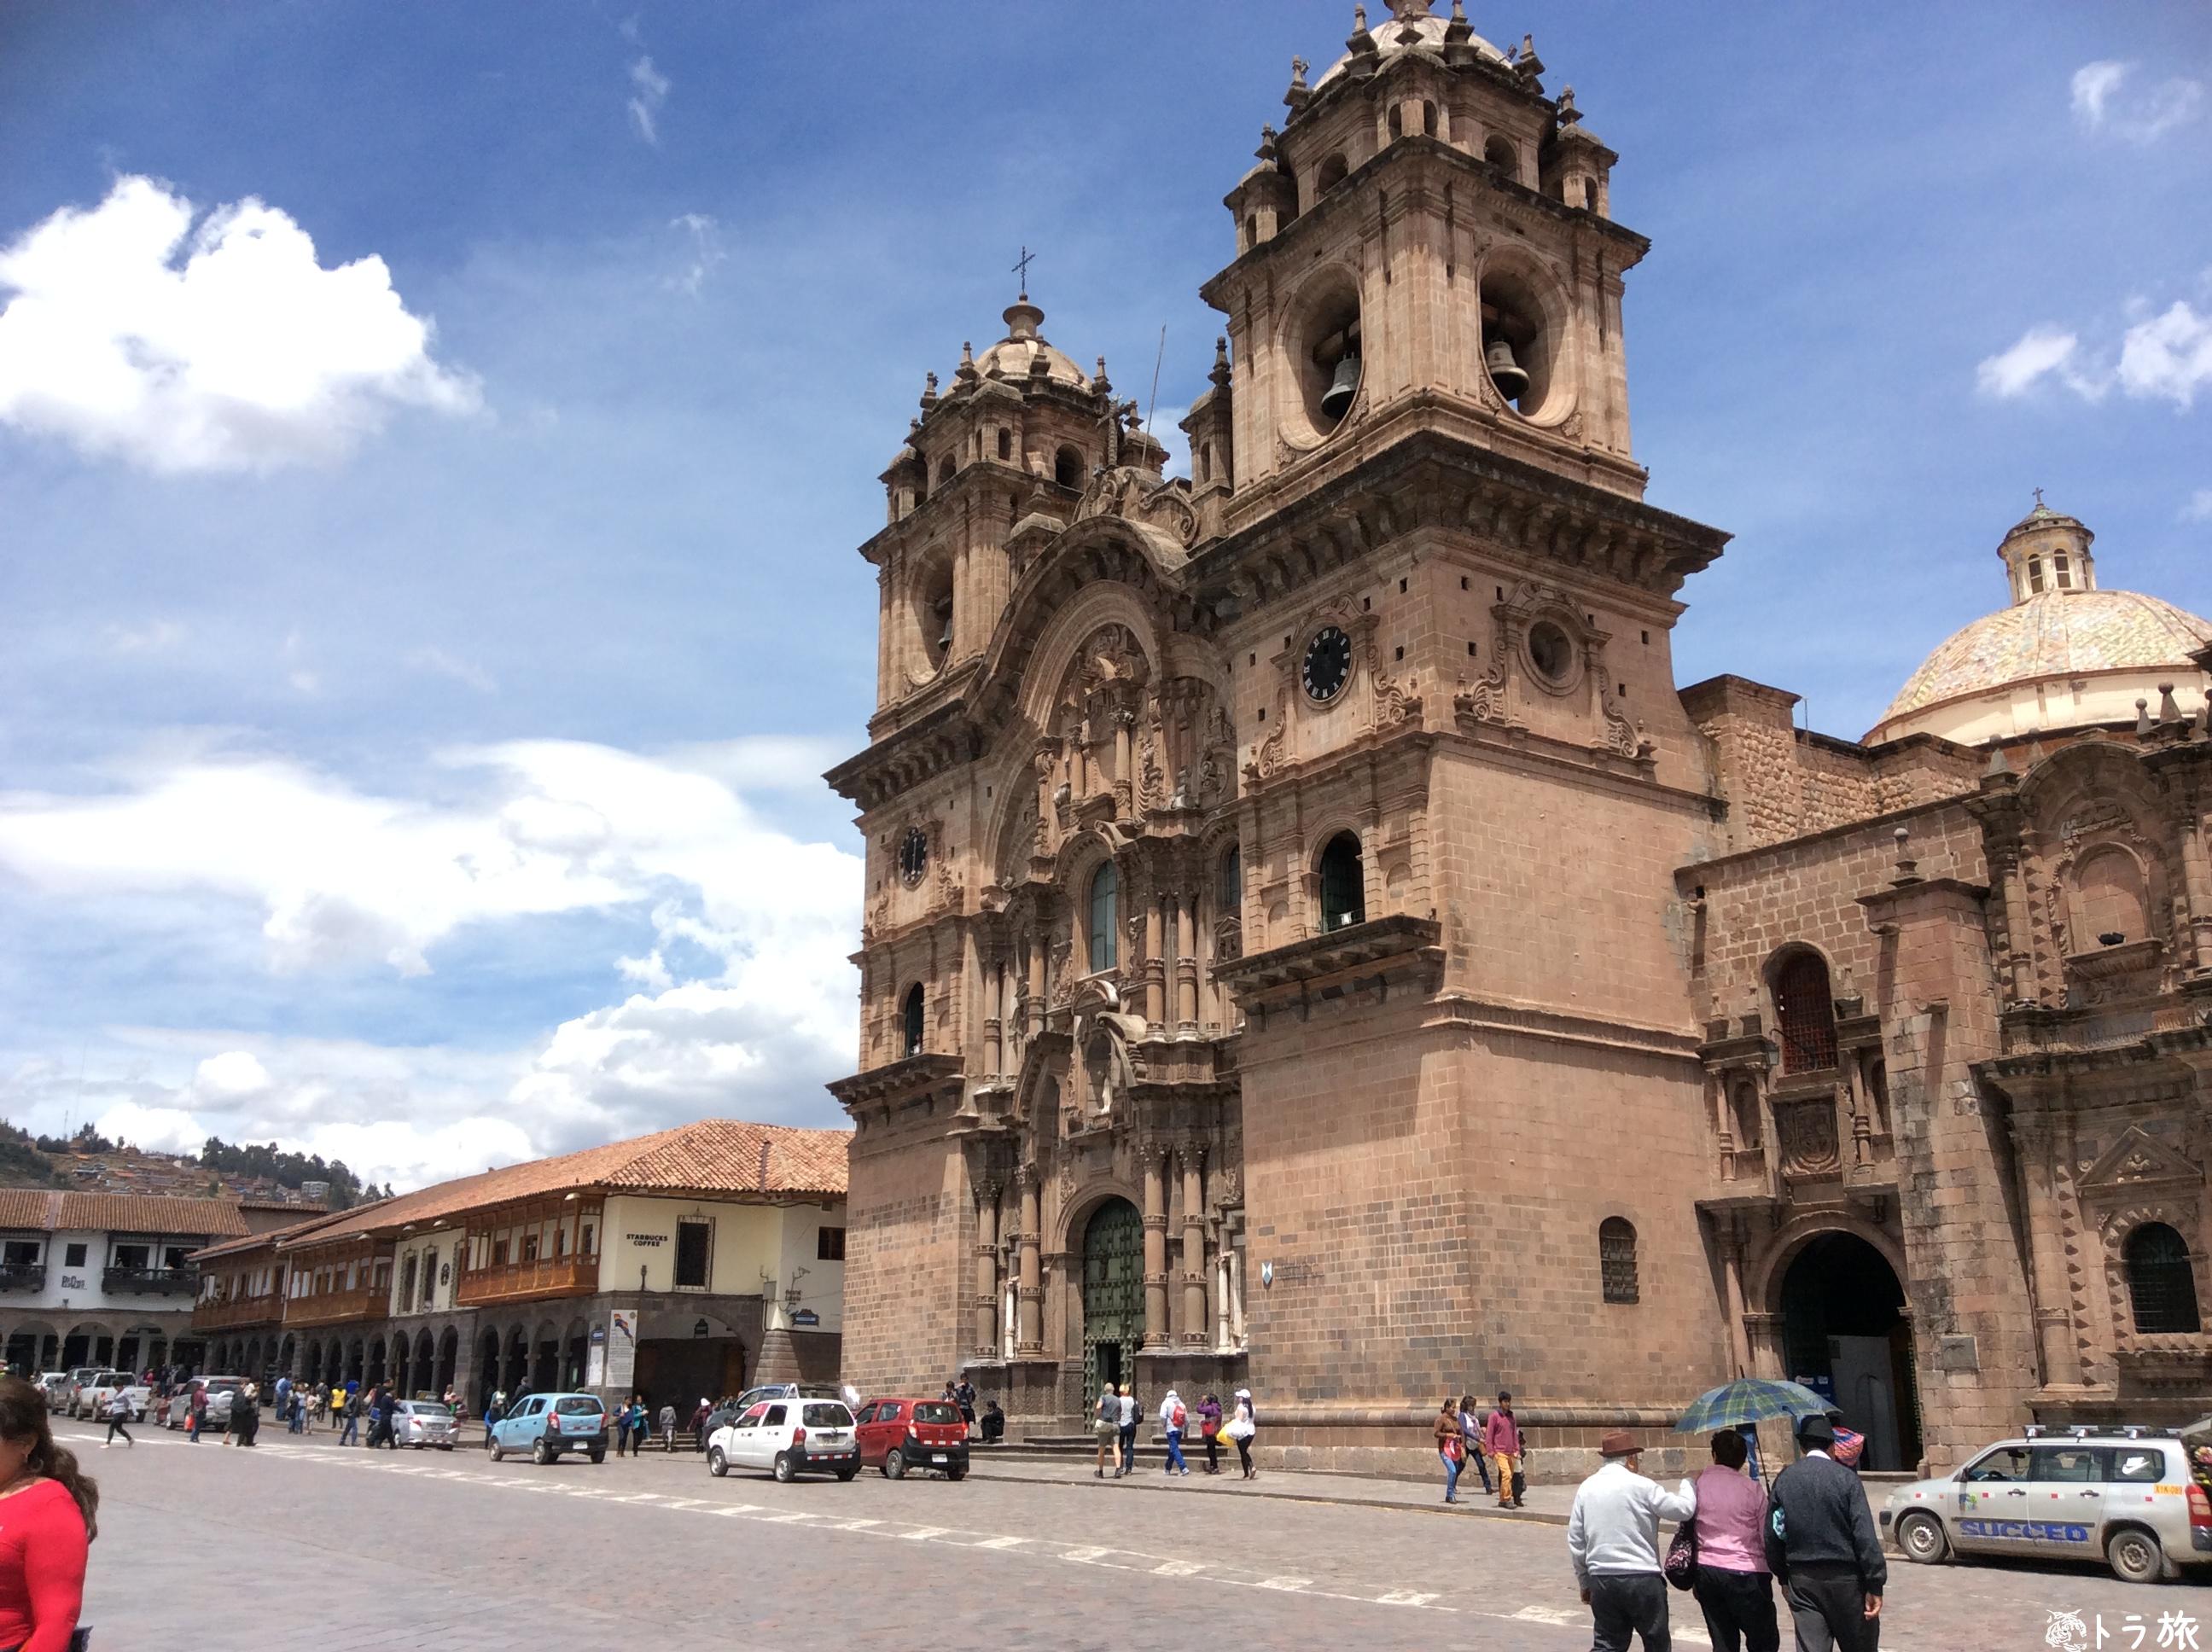 【クスコ】マチュピチュの玄関口は美しい街だった【ペルー】